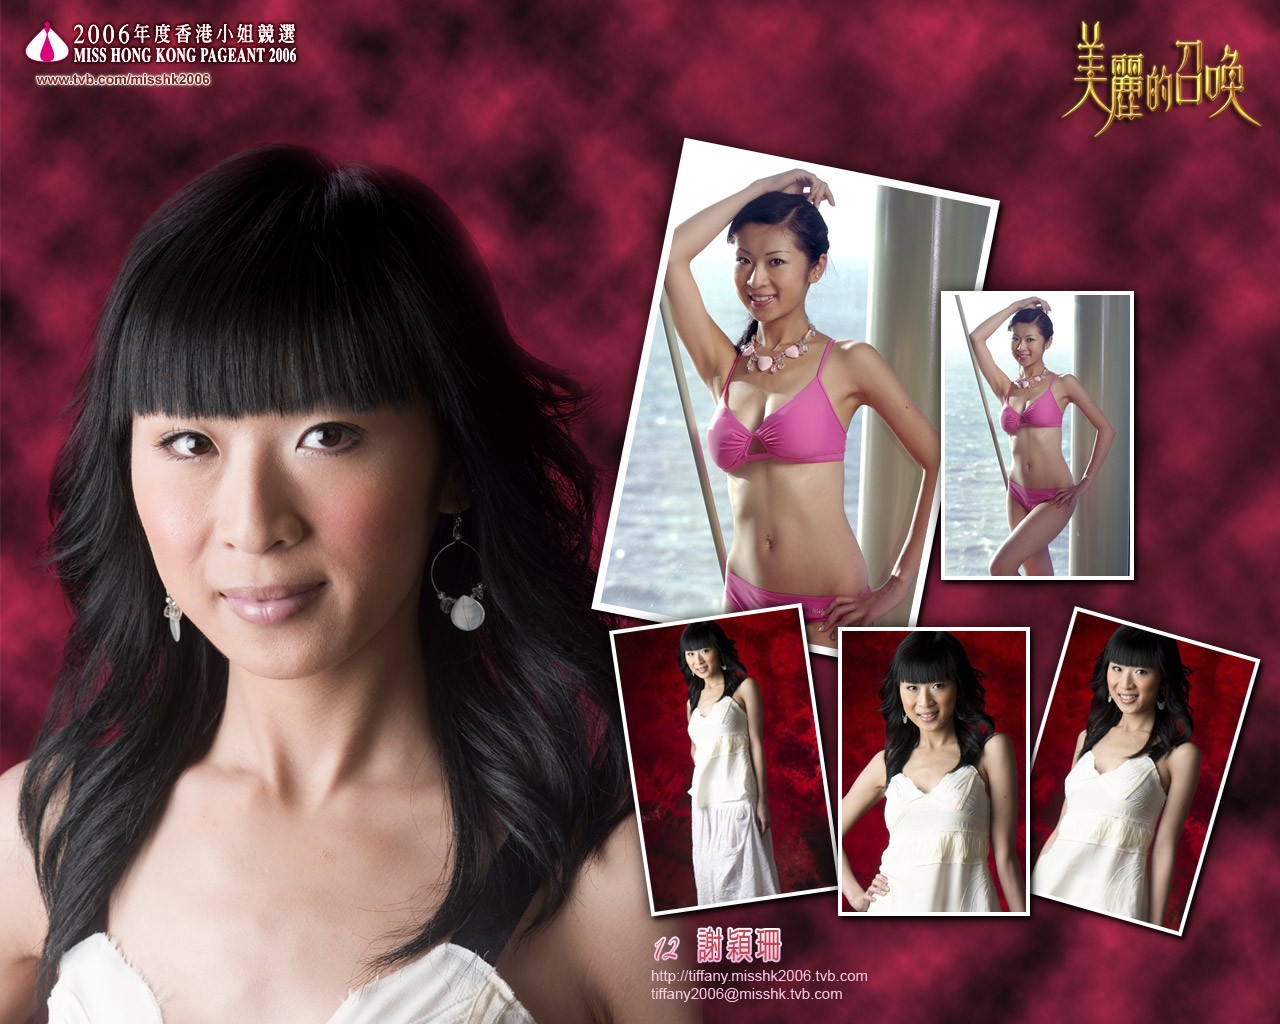 Miss Hong Kong 2006 Album #5 - 1280x1024